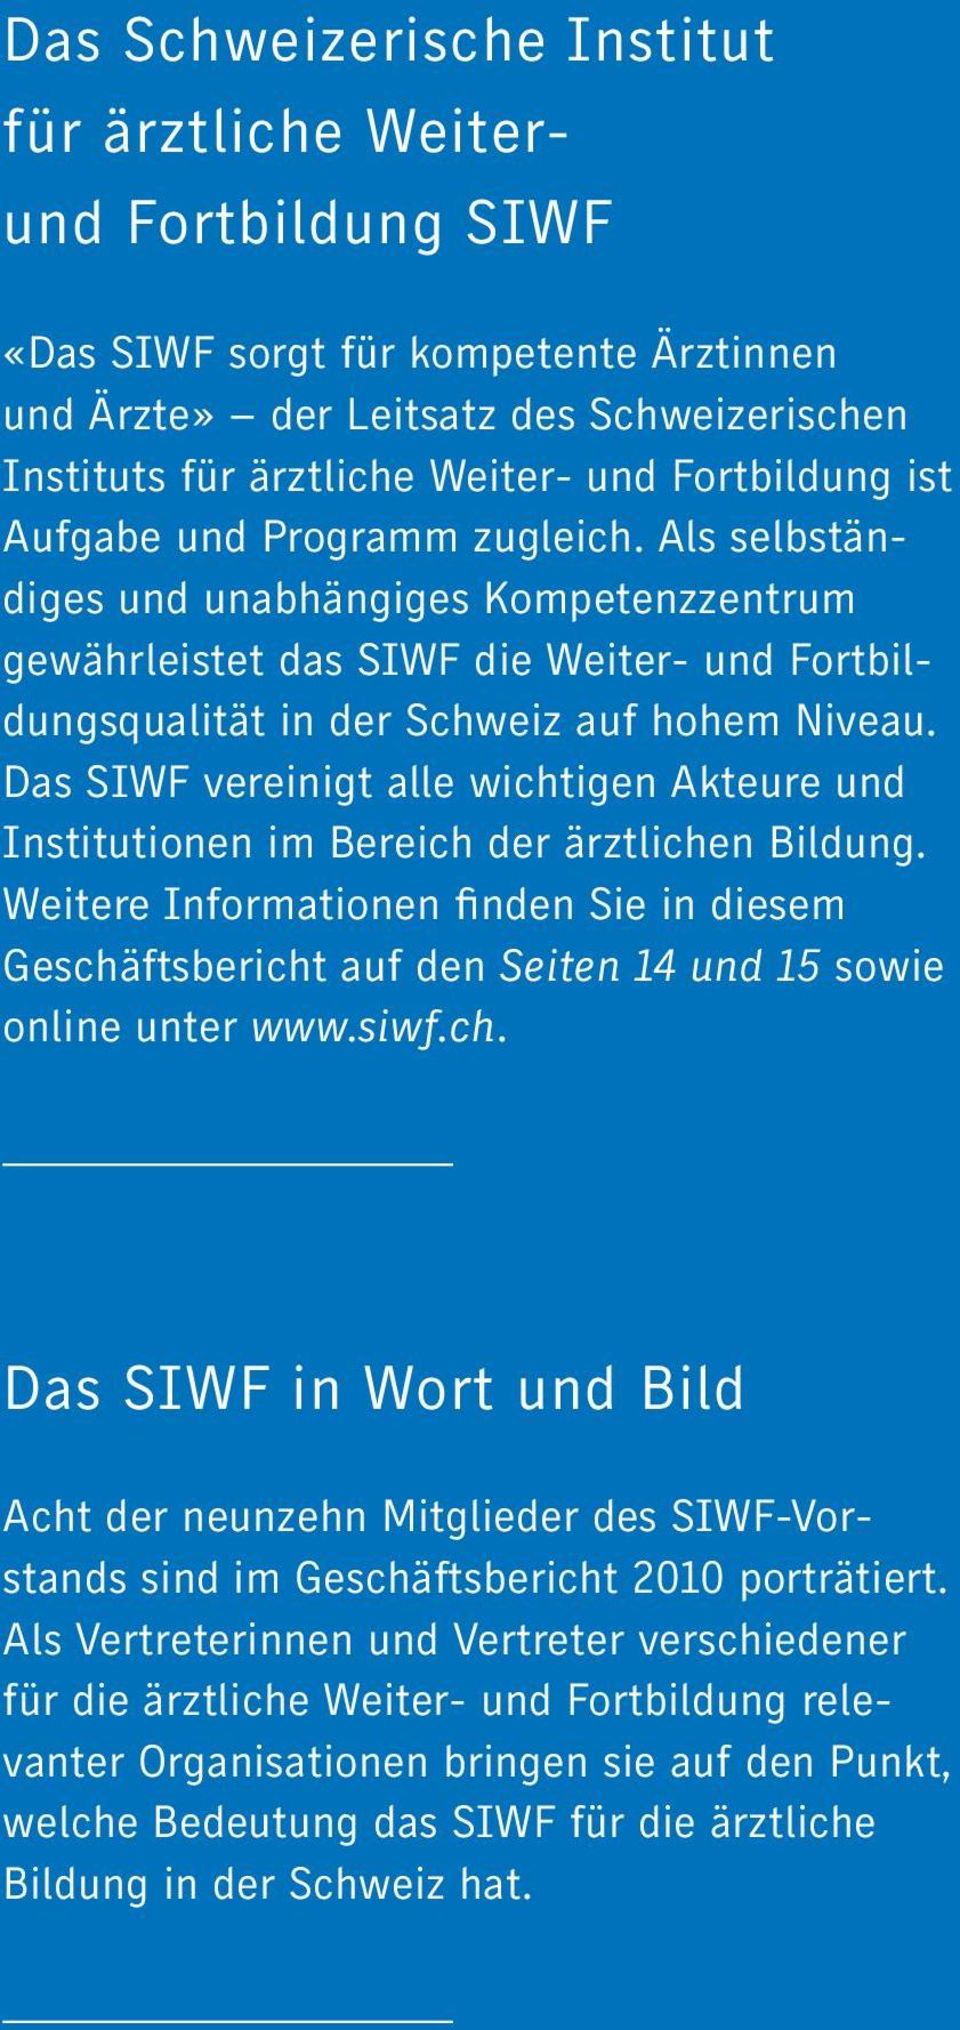 Das SIWF vereinigt alle wichtigen Akteure und Institutionen im Bereich der ärztlichen Bildung.